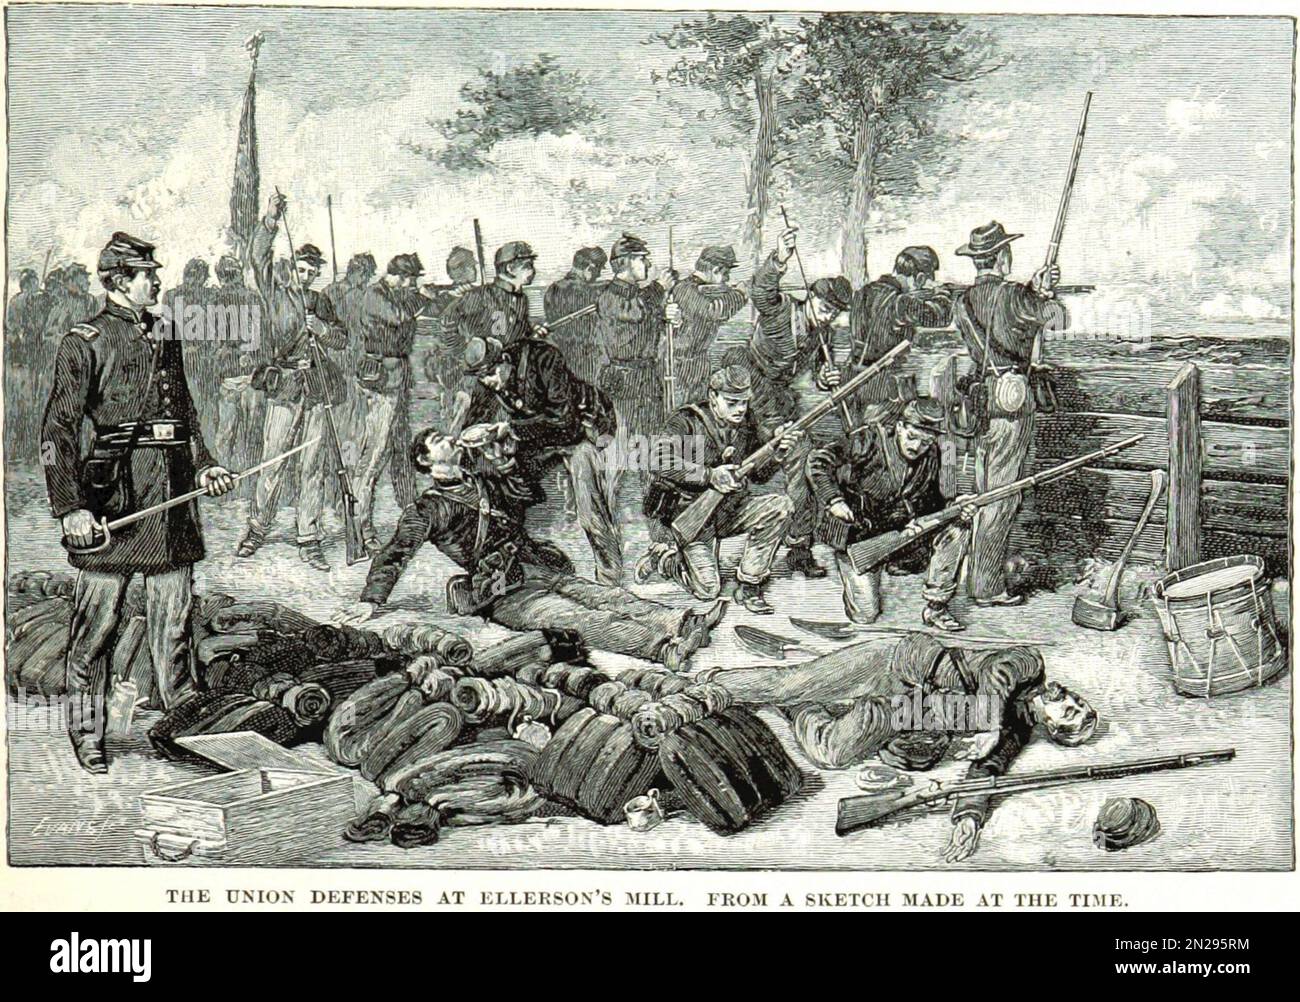 Le difese unioniste al mulino di Ellerson durante la battaglia di Beaver Dam Creek durante la guerra civile americana Foto Stock